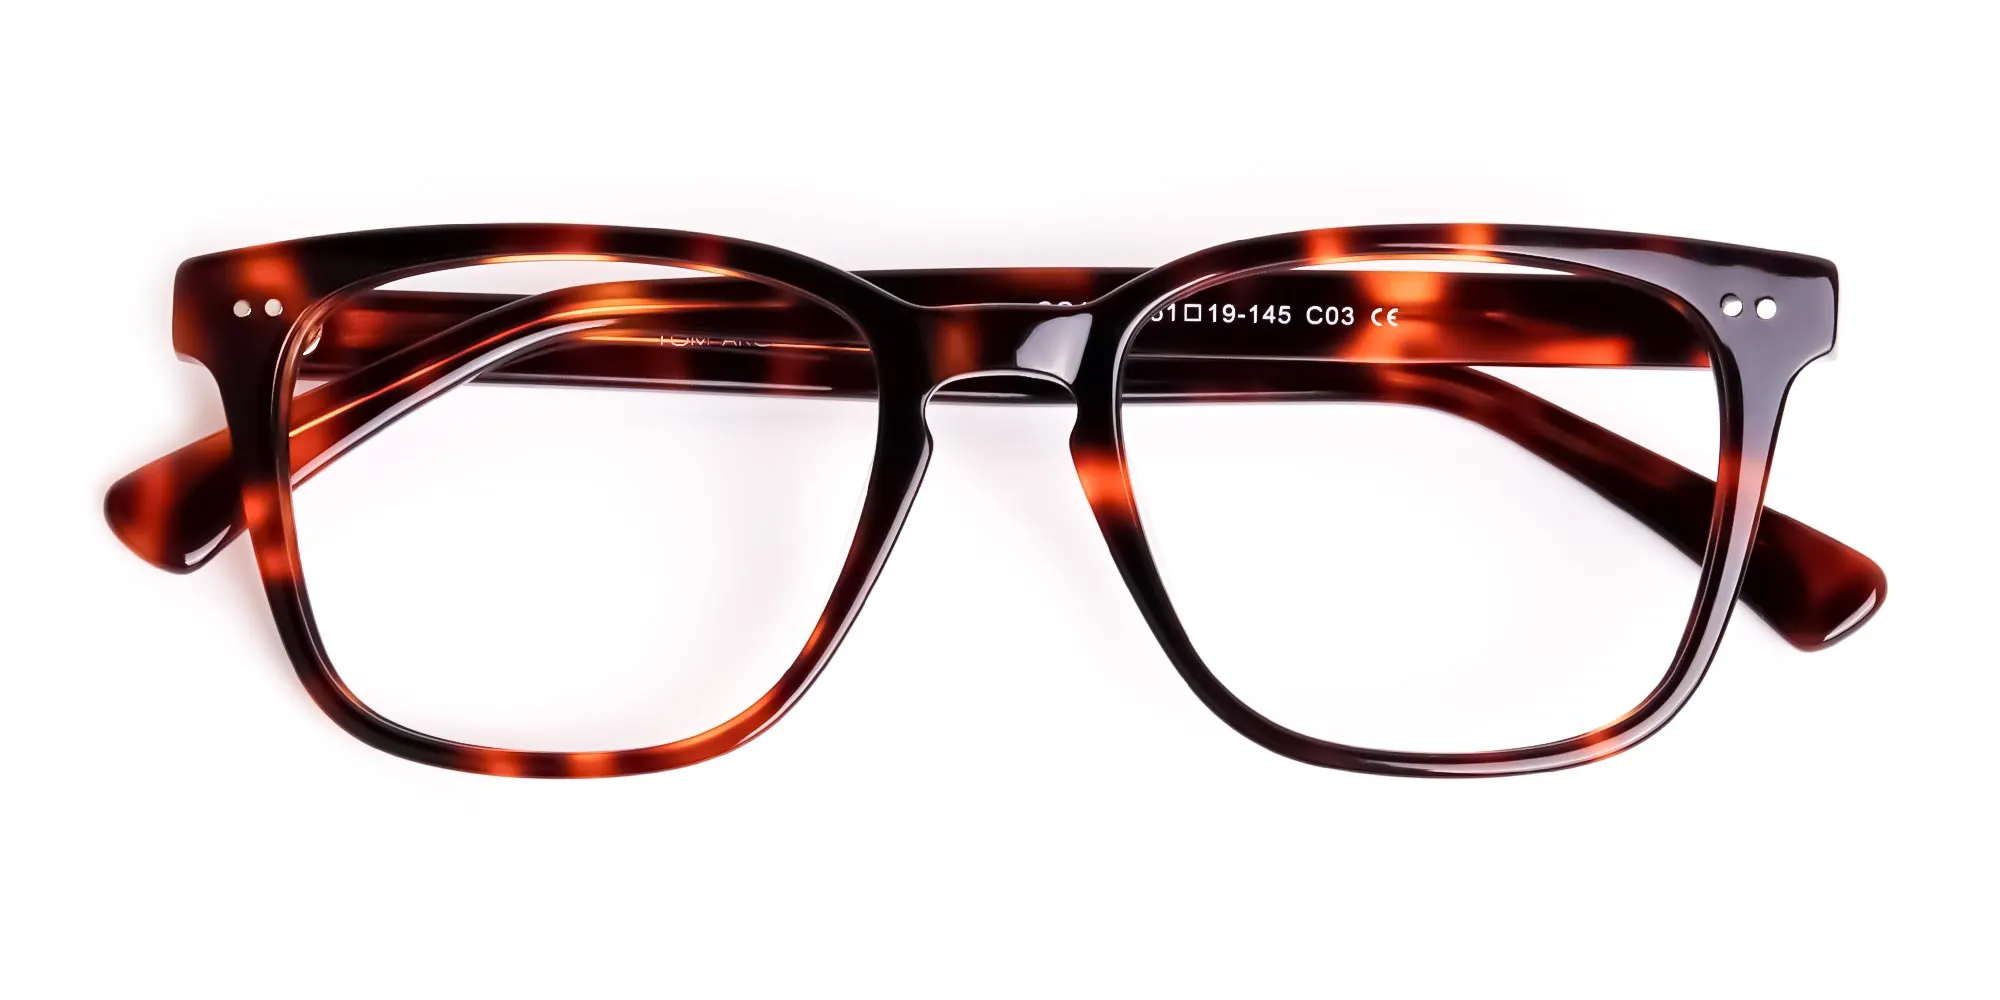 havana-and-tortoise-Shell-Wayfarer-glasses-frames-2